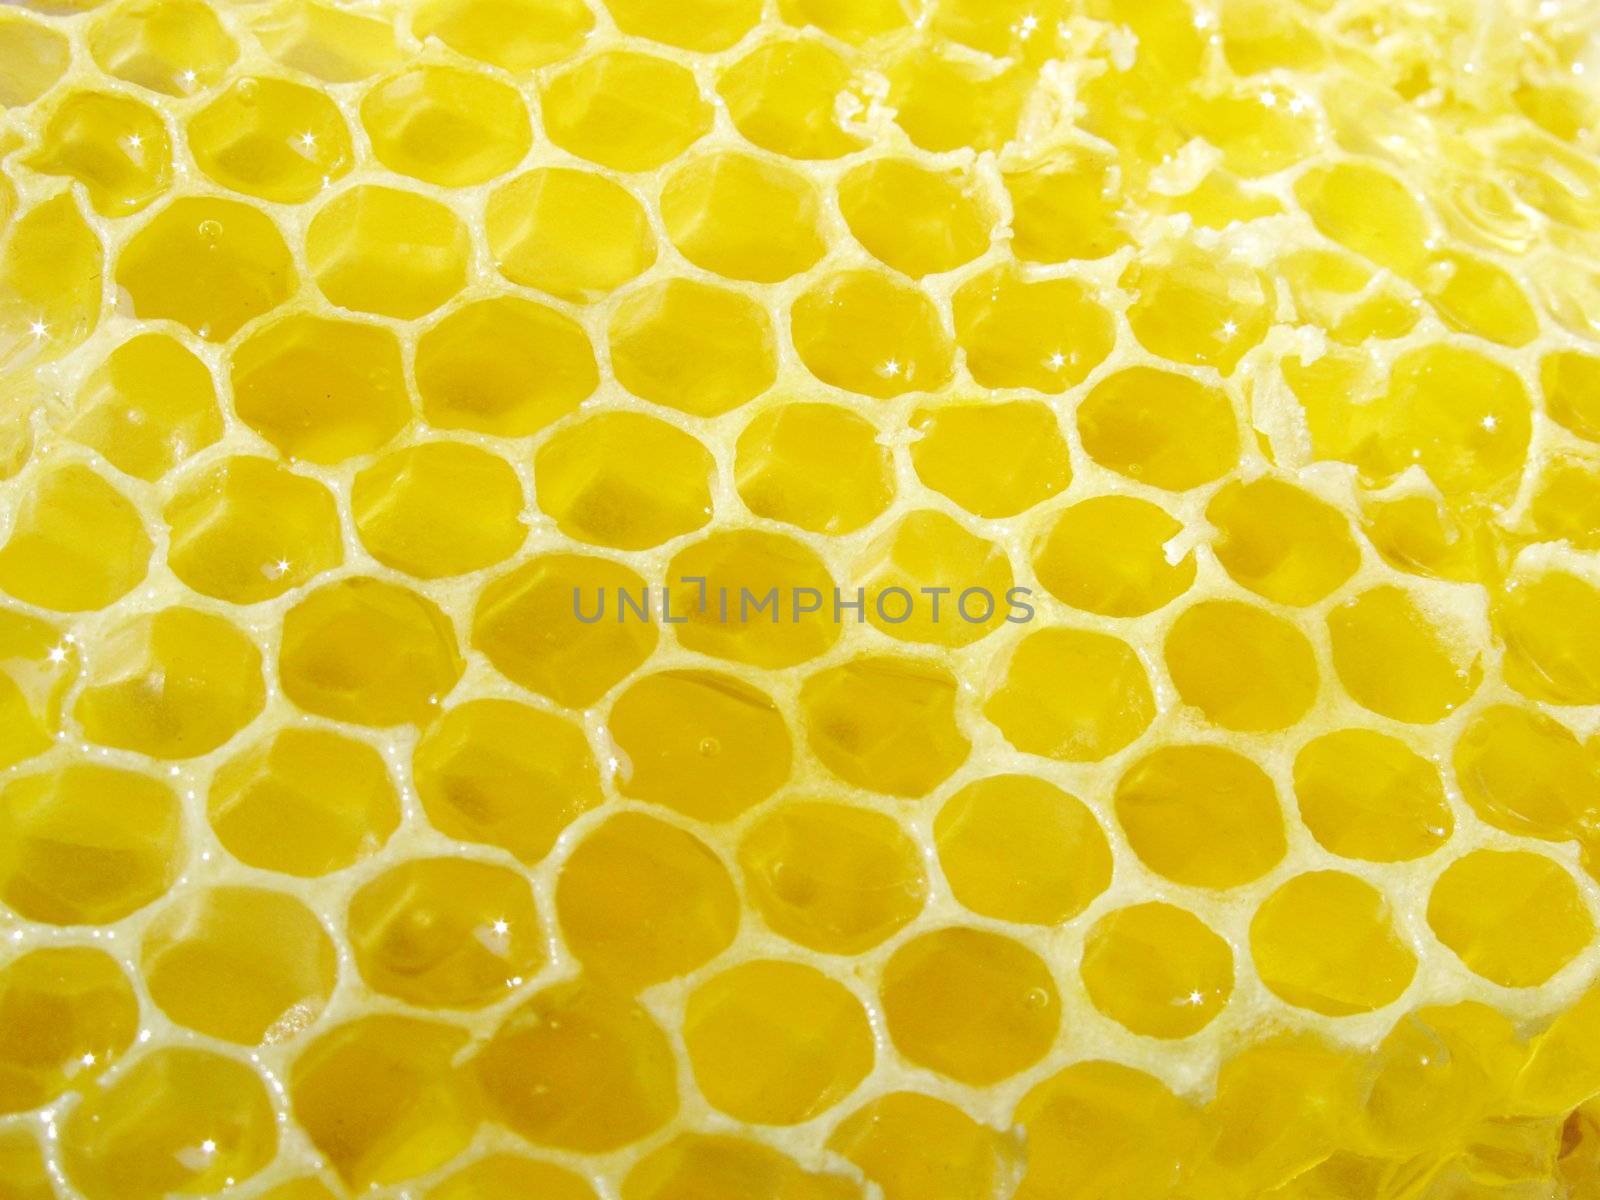 close up of honey combs